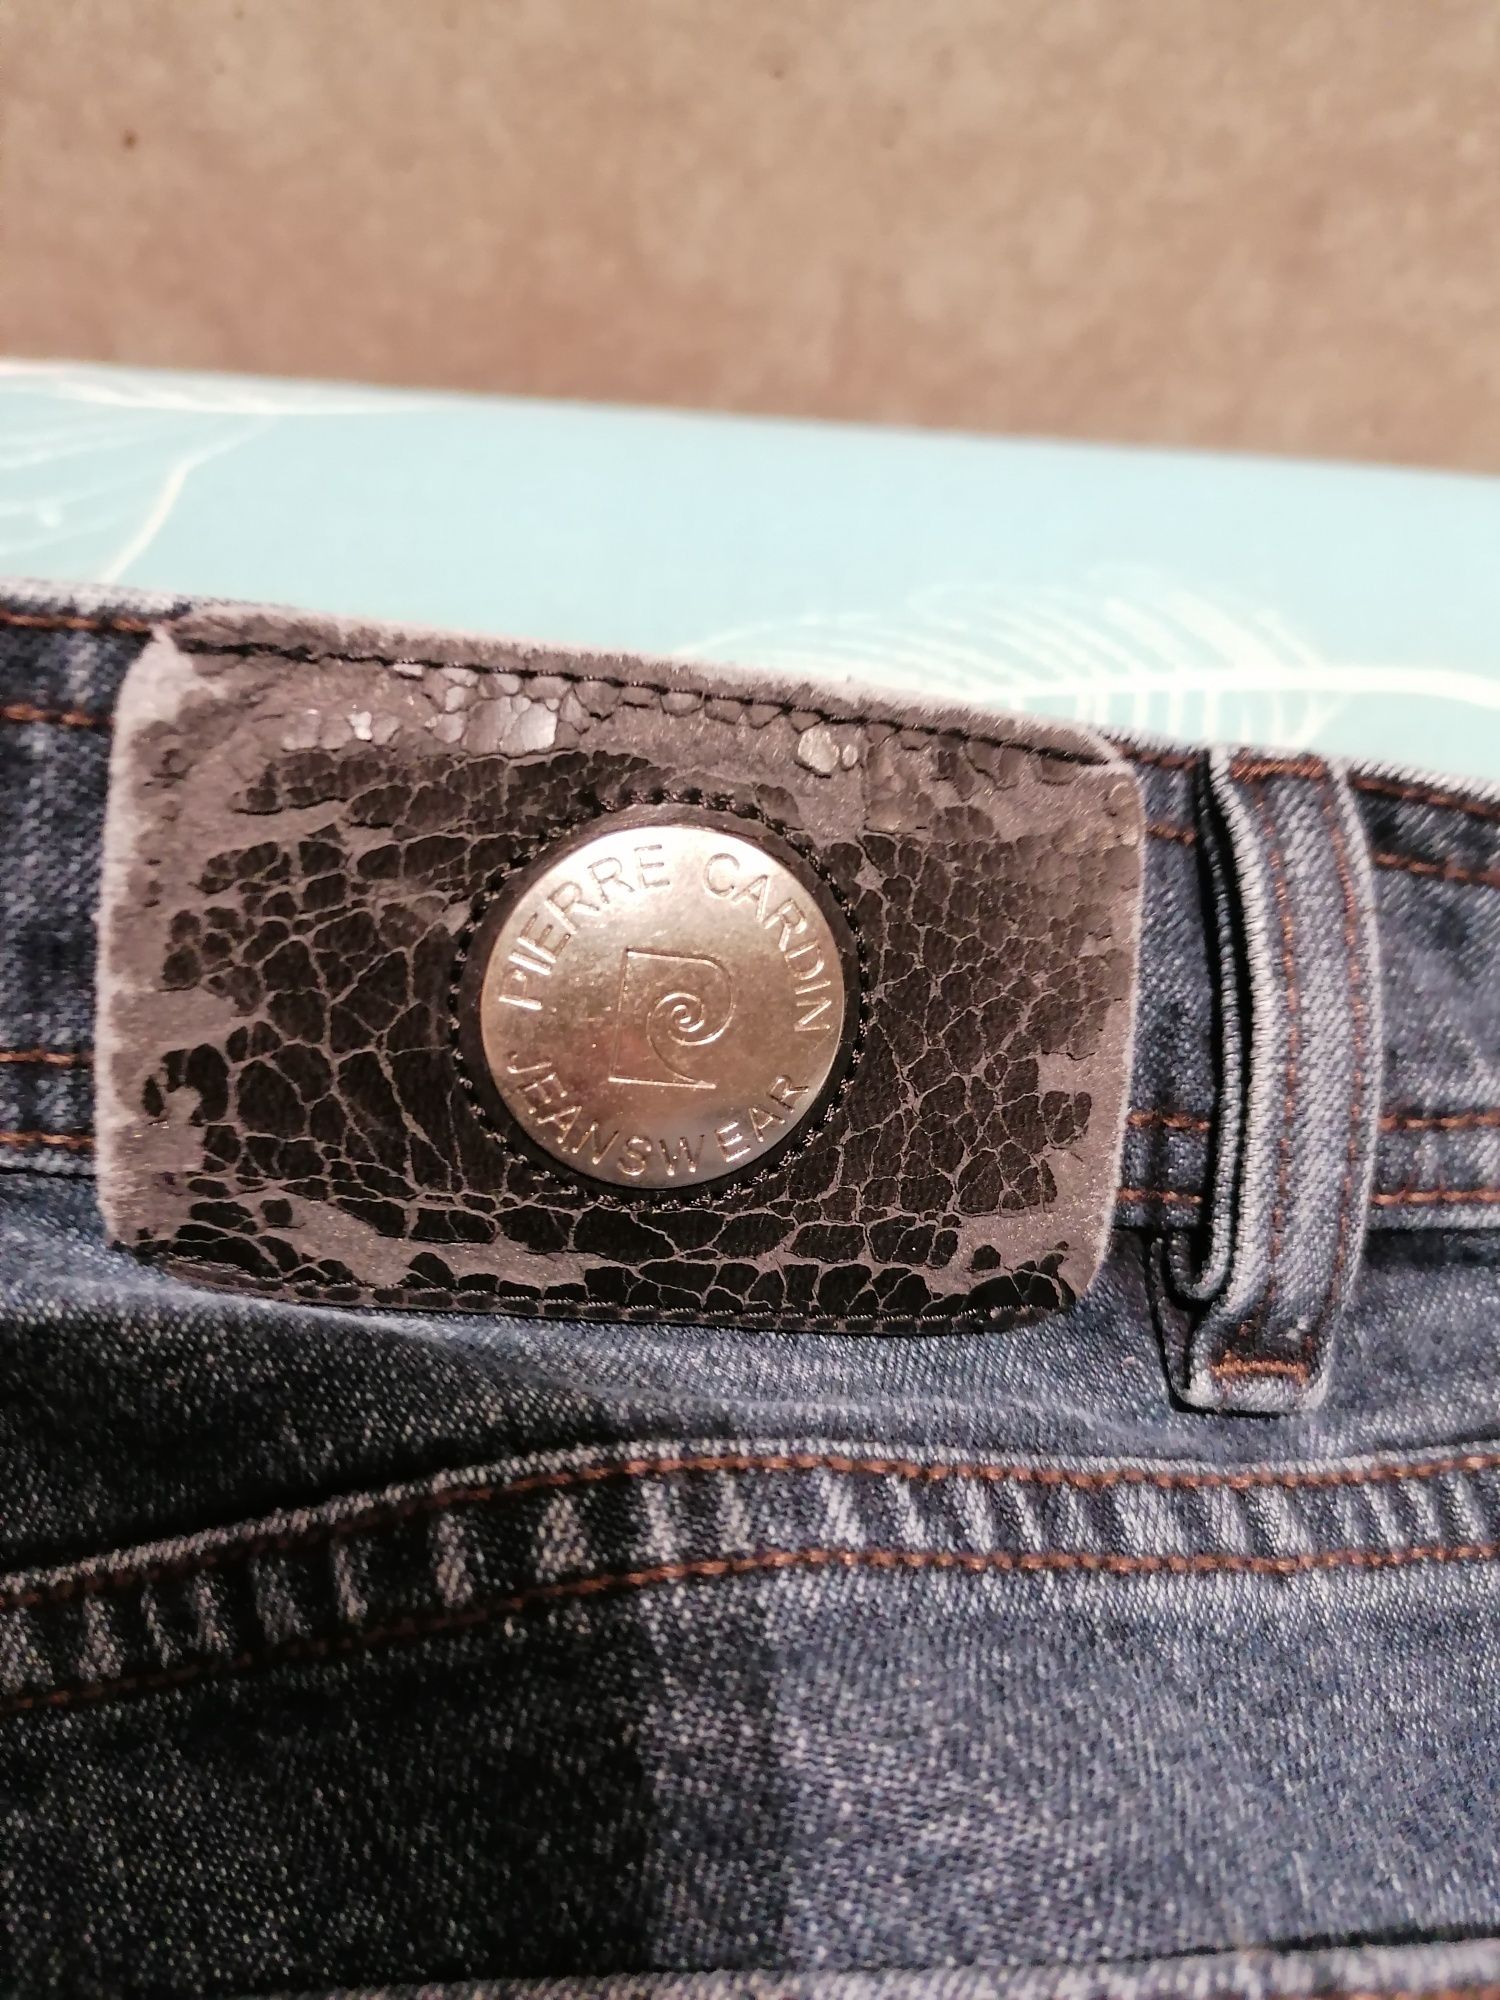 Jeansy spodnie jeansowe Pierre Cardin granatowe